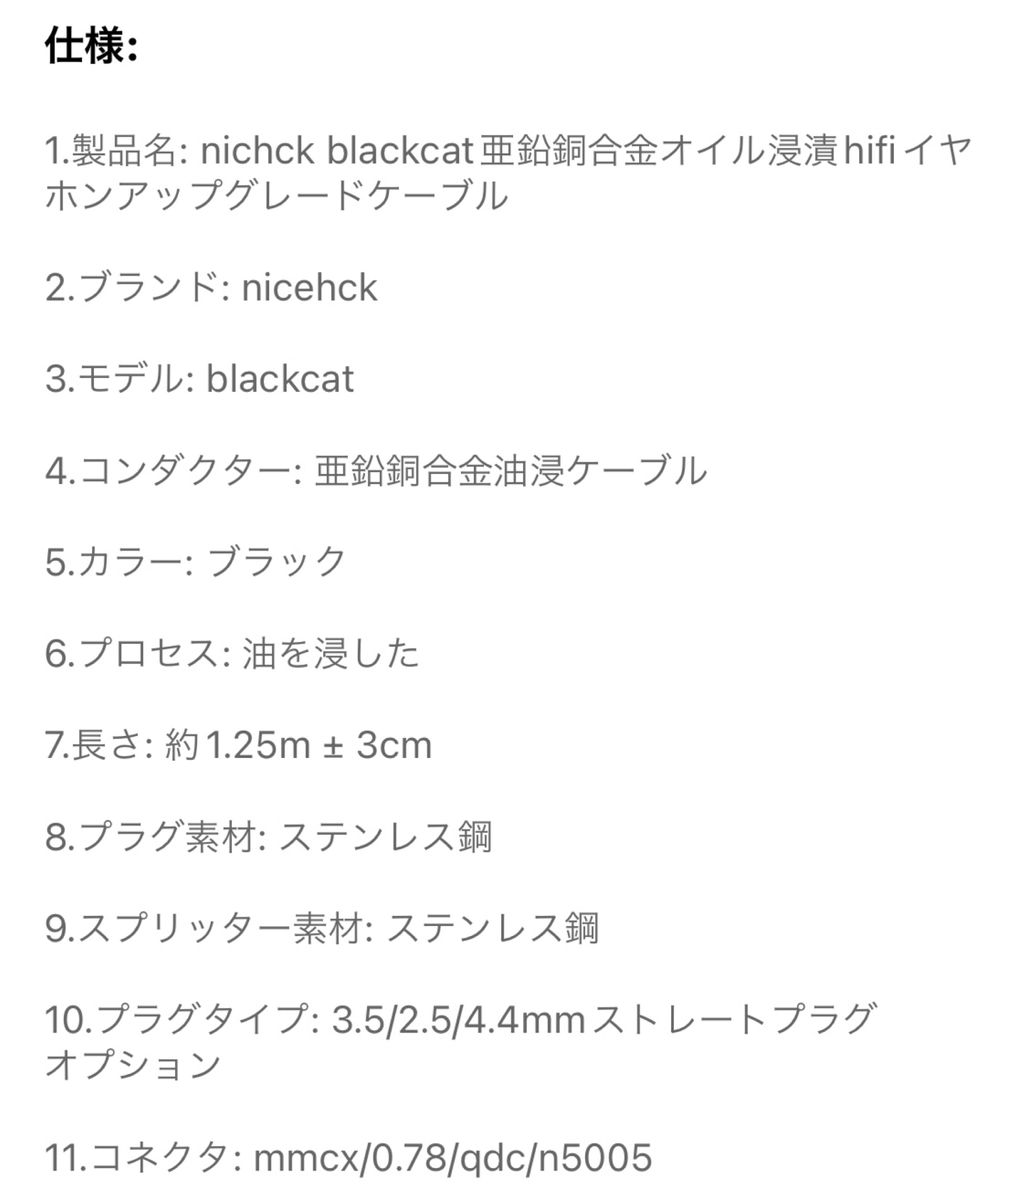 MMCX 3.5mm BlackCat NICEHCK イヤホンケーブル リケーブル 音質改善